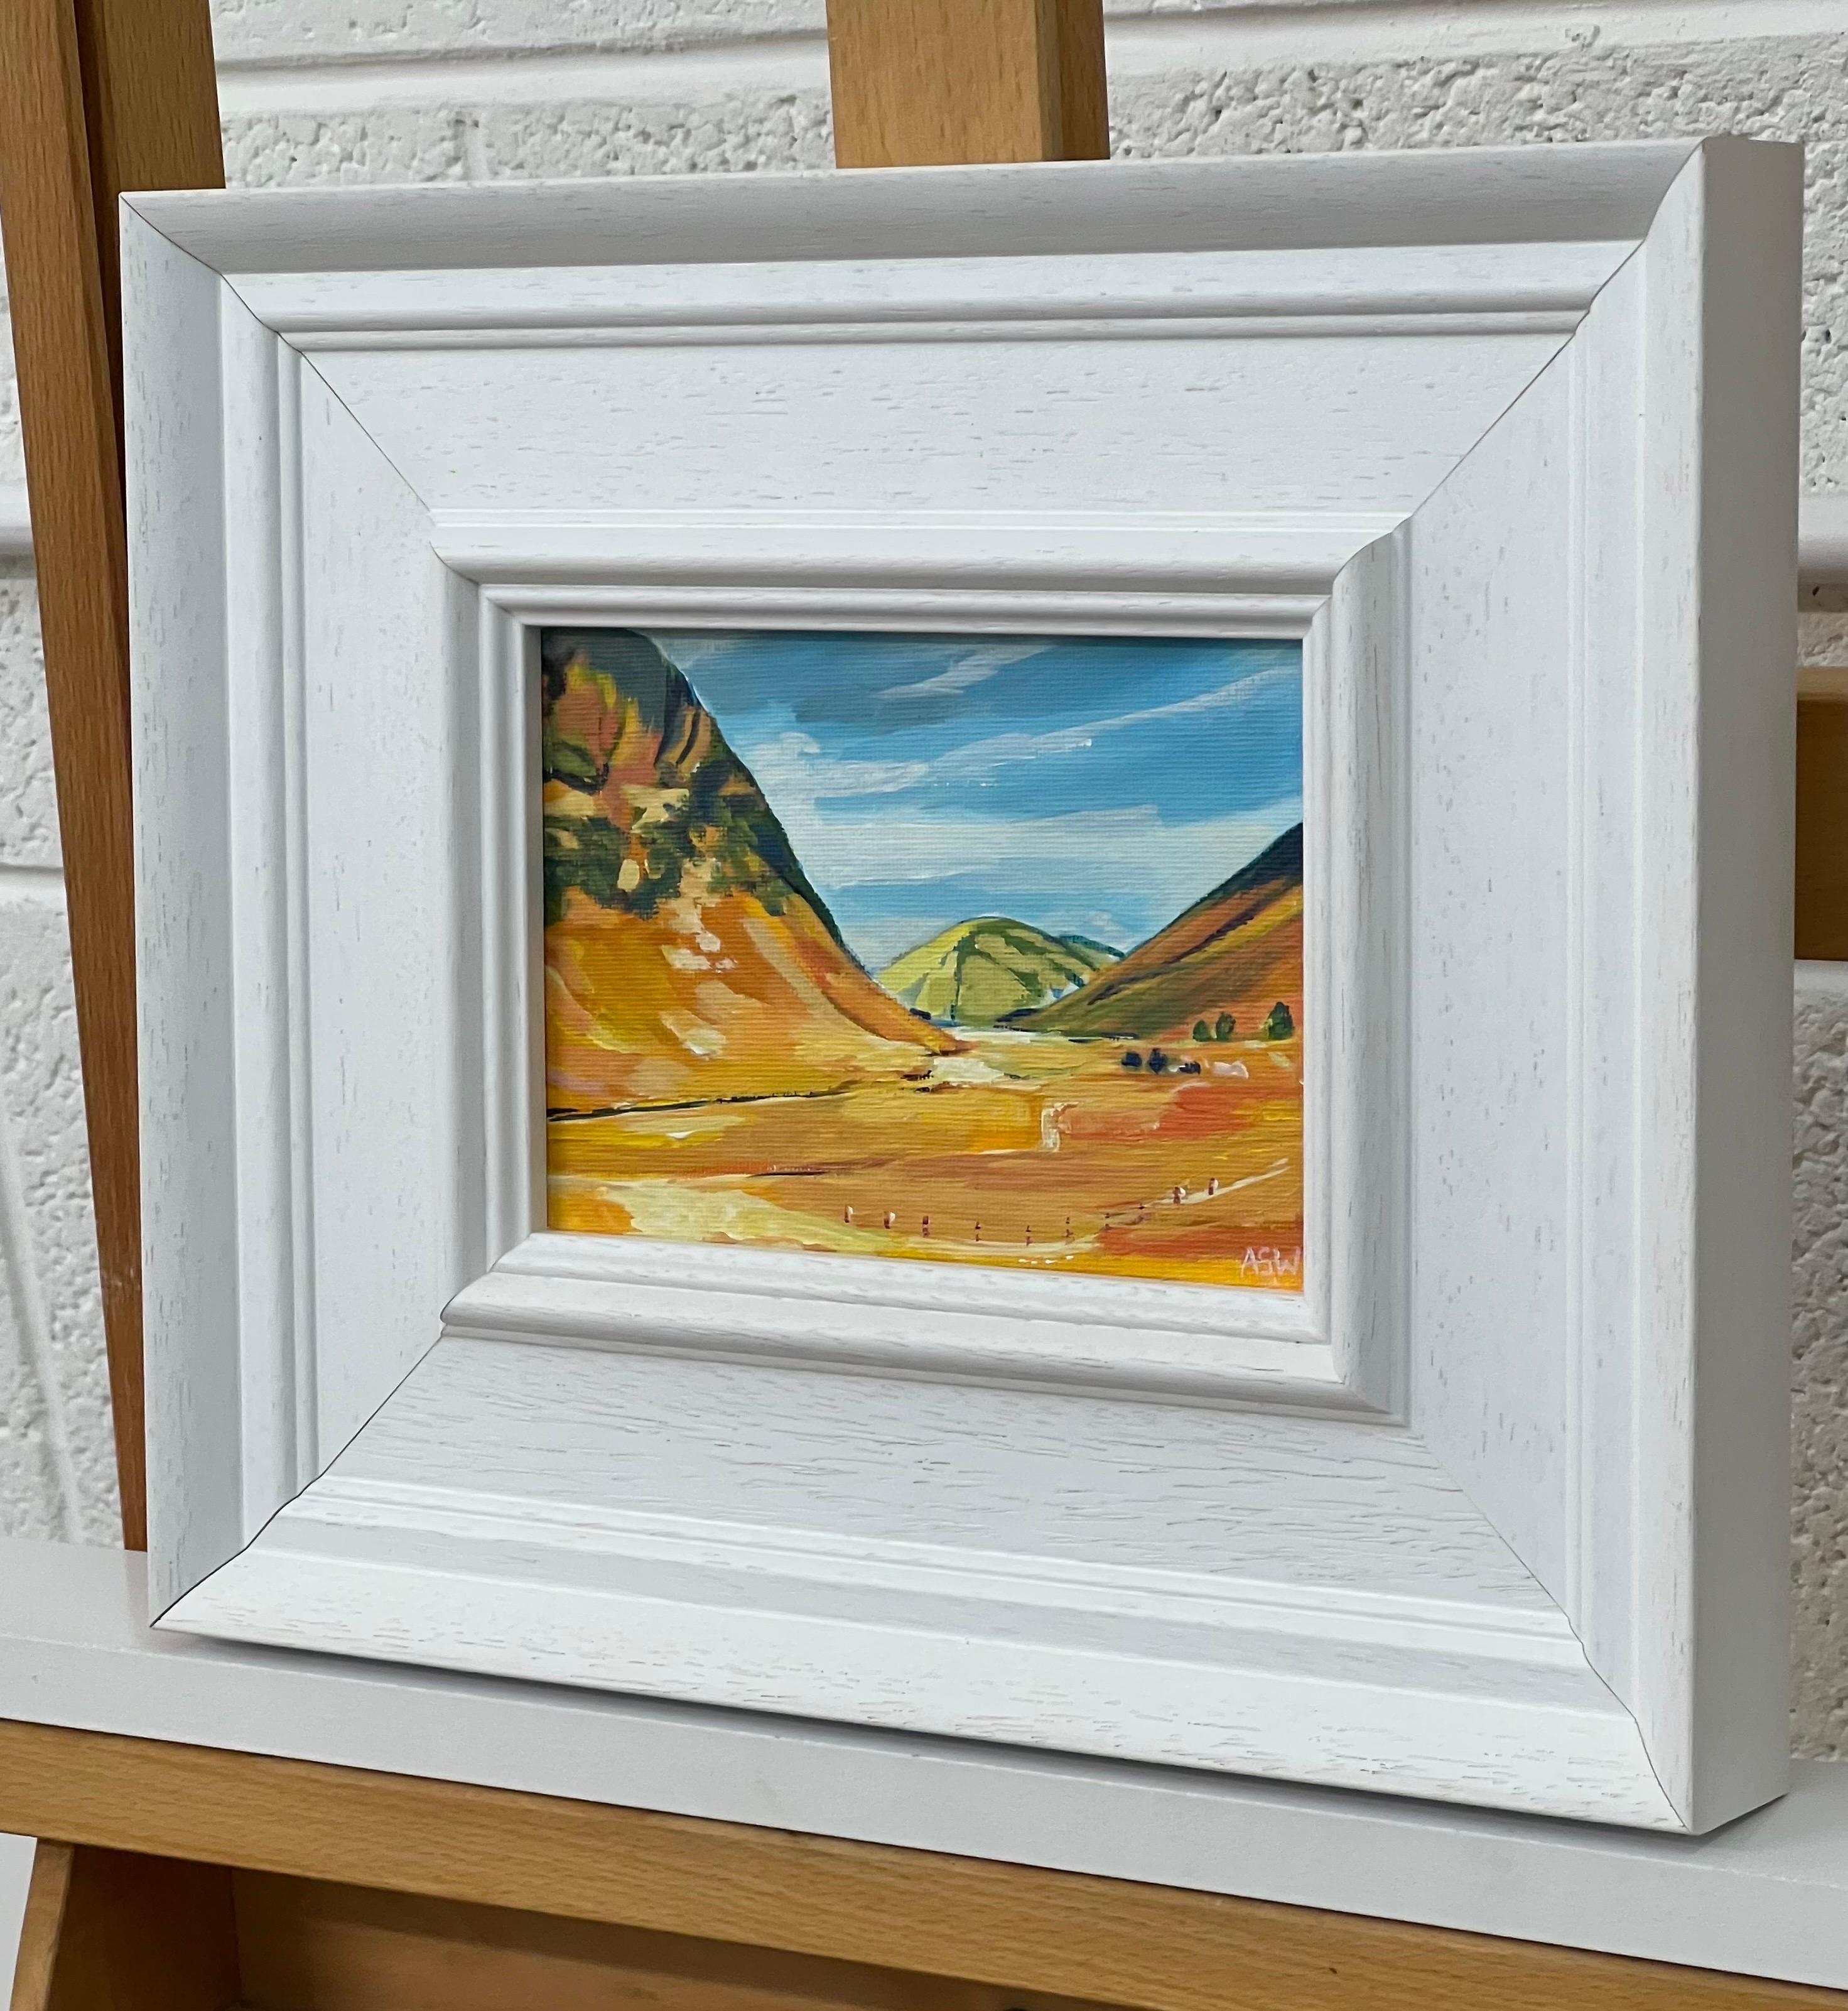 Miniatur-Landschaftsstudie der schottischen Highlands von der zeitgenössischen britischen Künstlerin Angela Wakefield

Kunst misst 7 x 5 Zoll
Rahmen misst 12 x 10 Zoll 

Angela Wakefield war zweimal auf dem Titelblatt von 